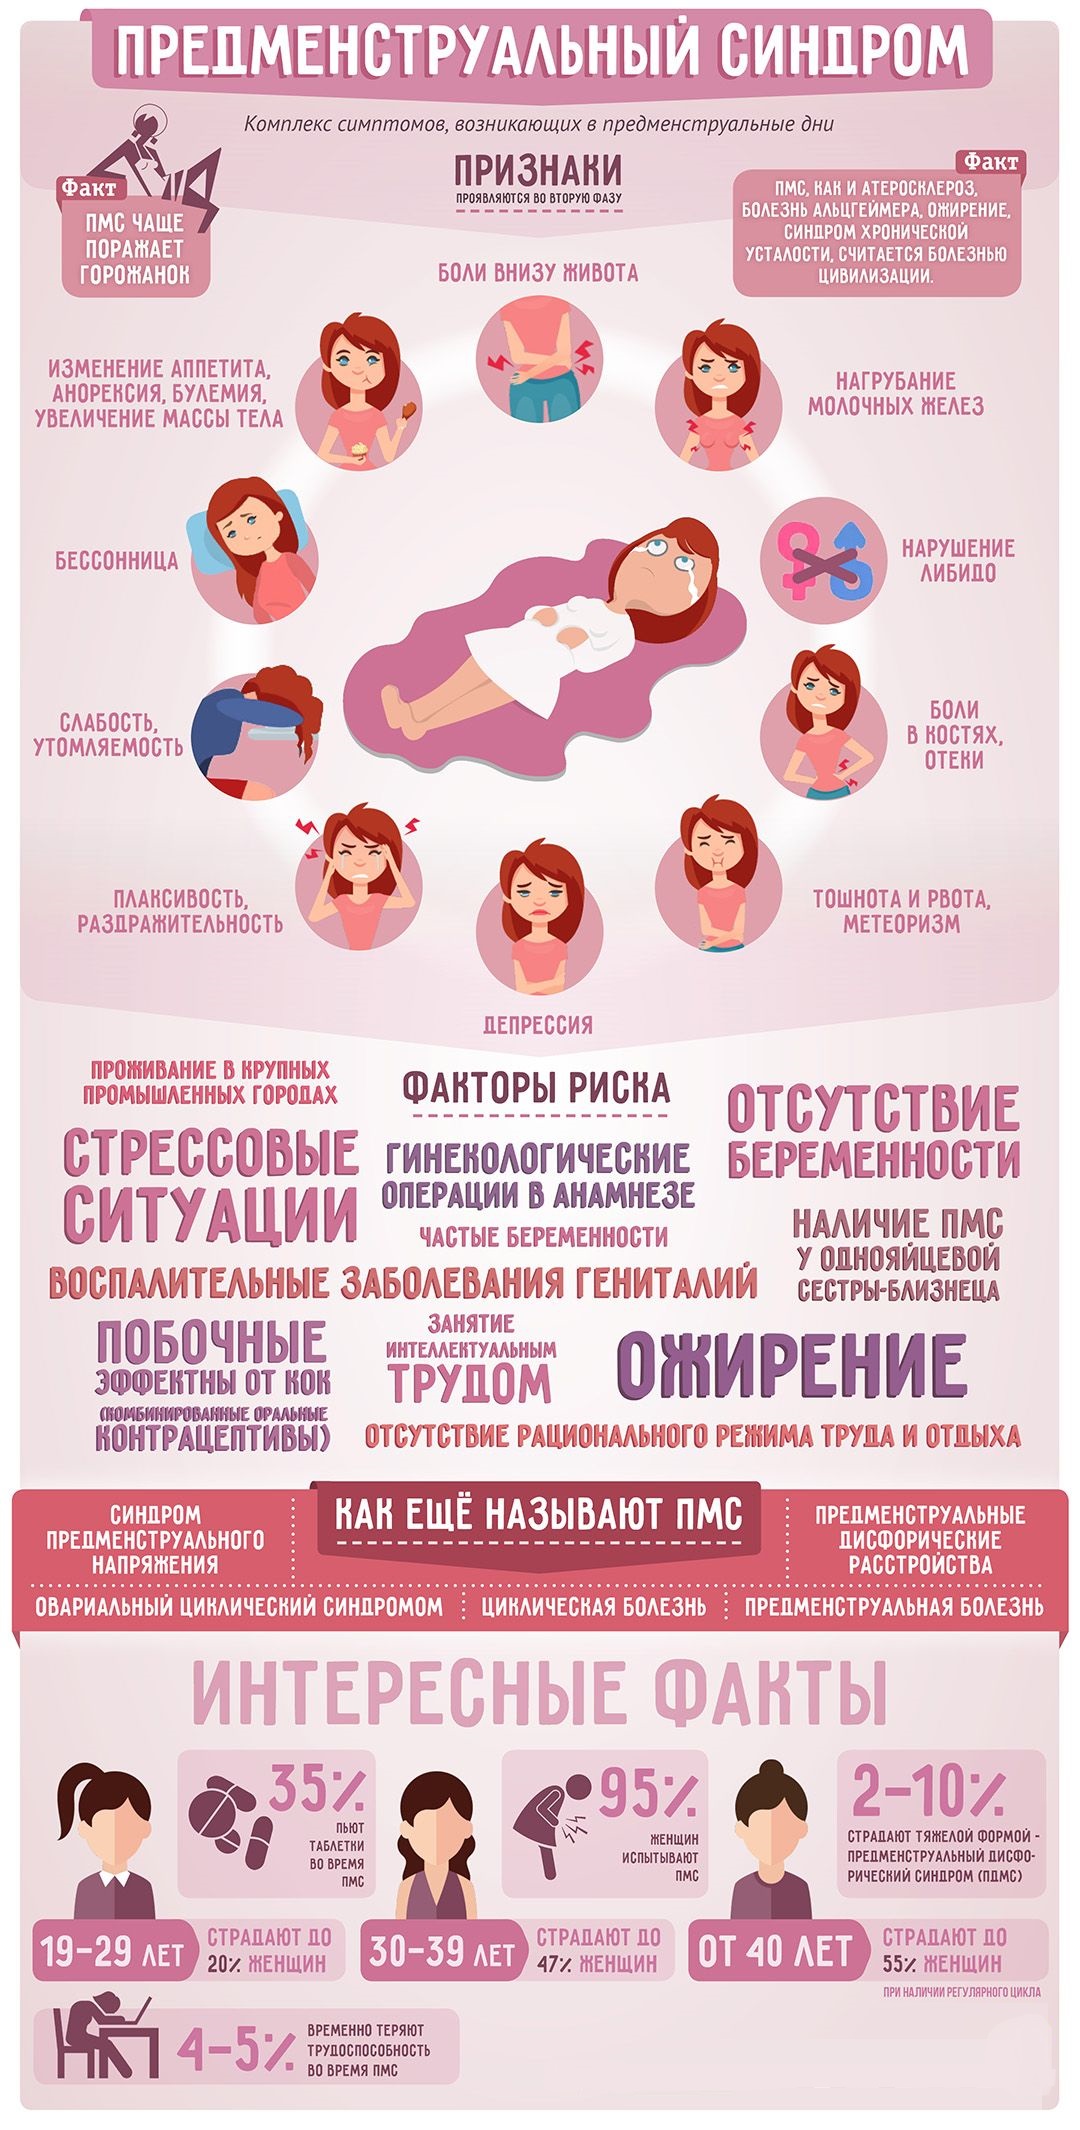 ПМС у женщин: что это, основные причины и симптомы